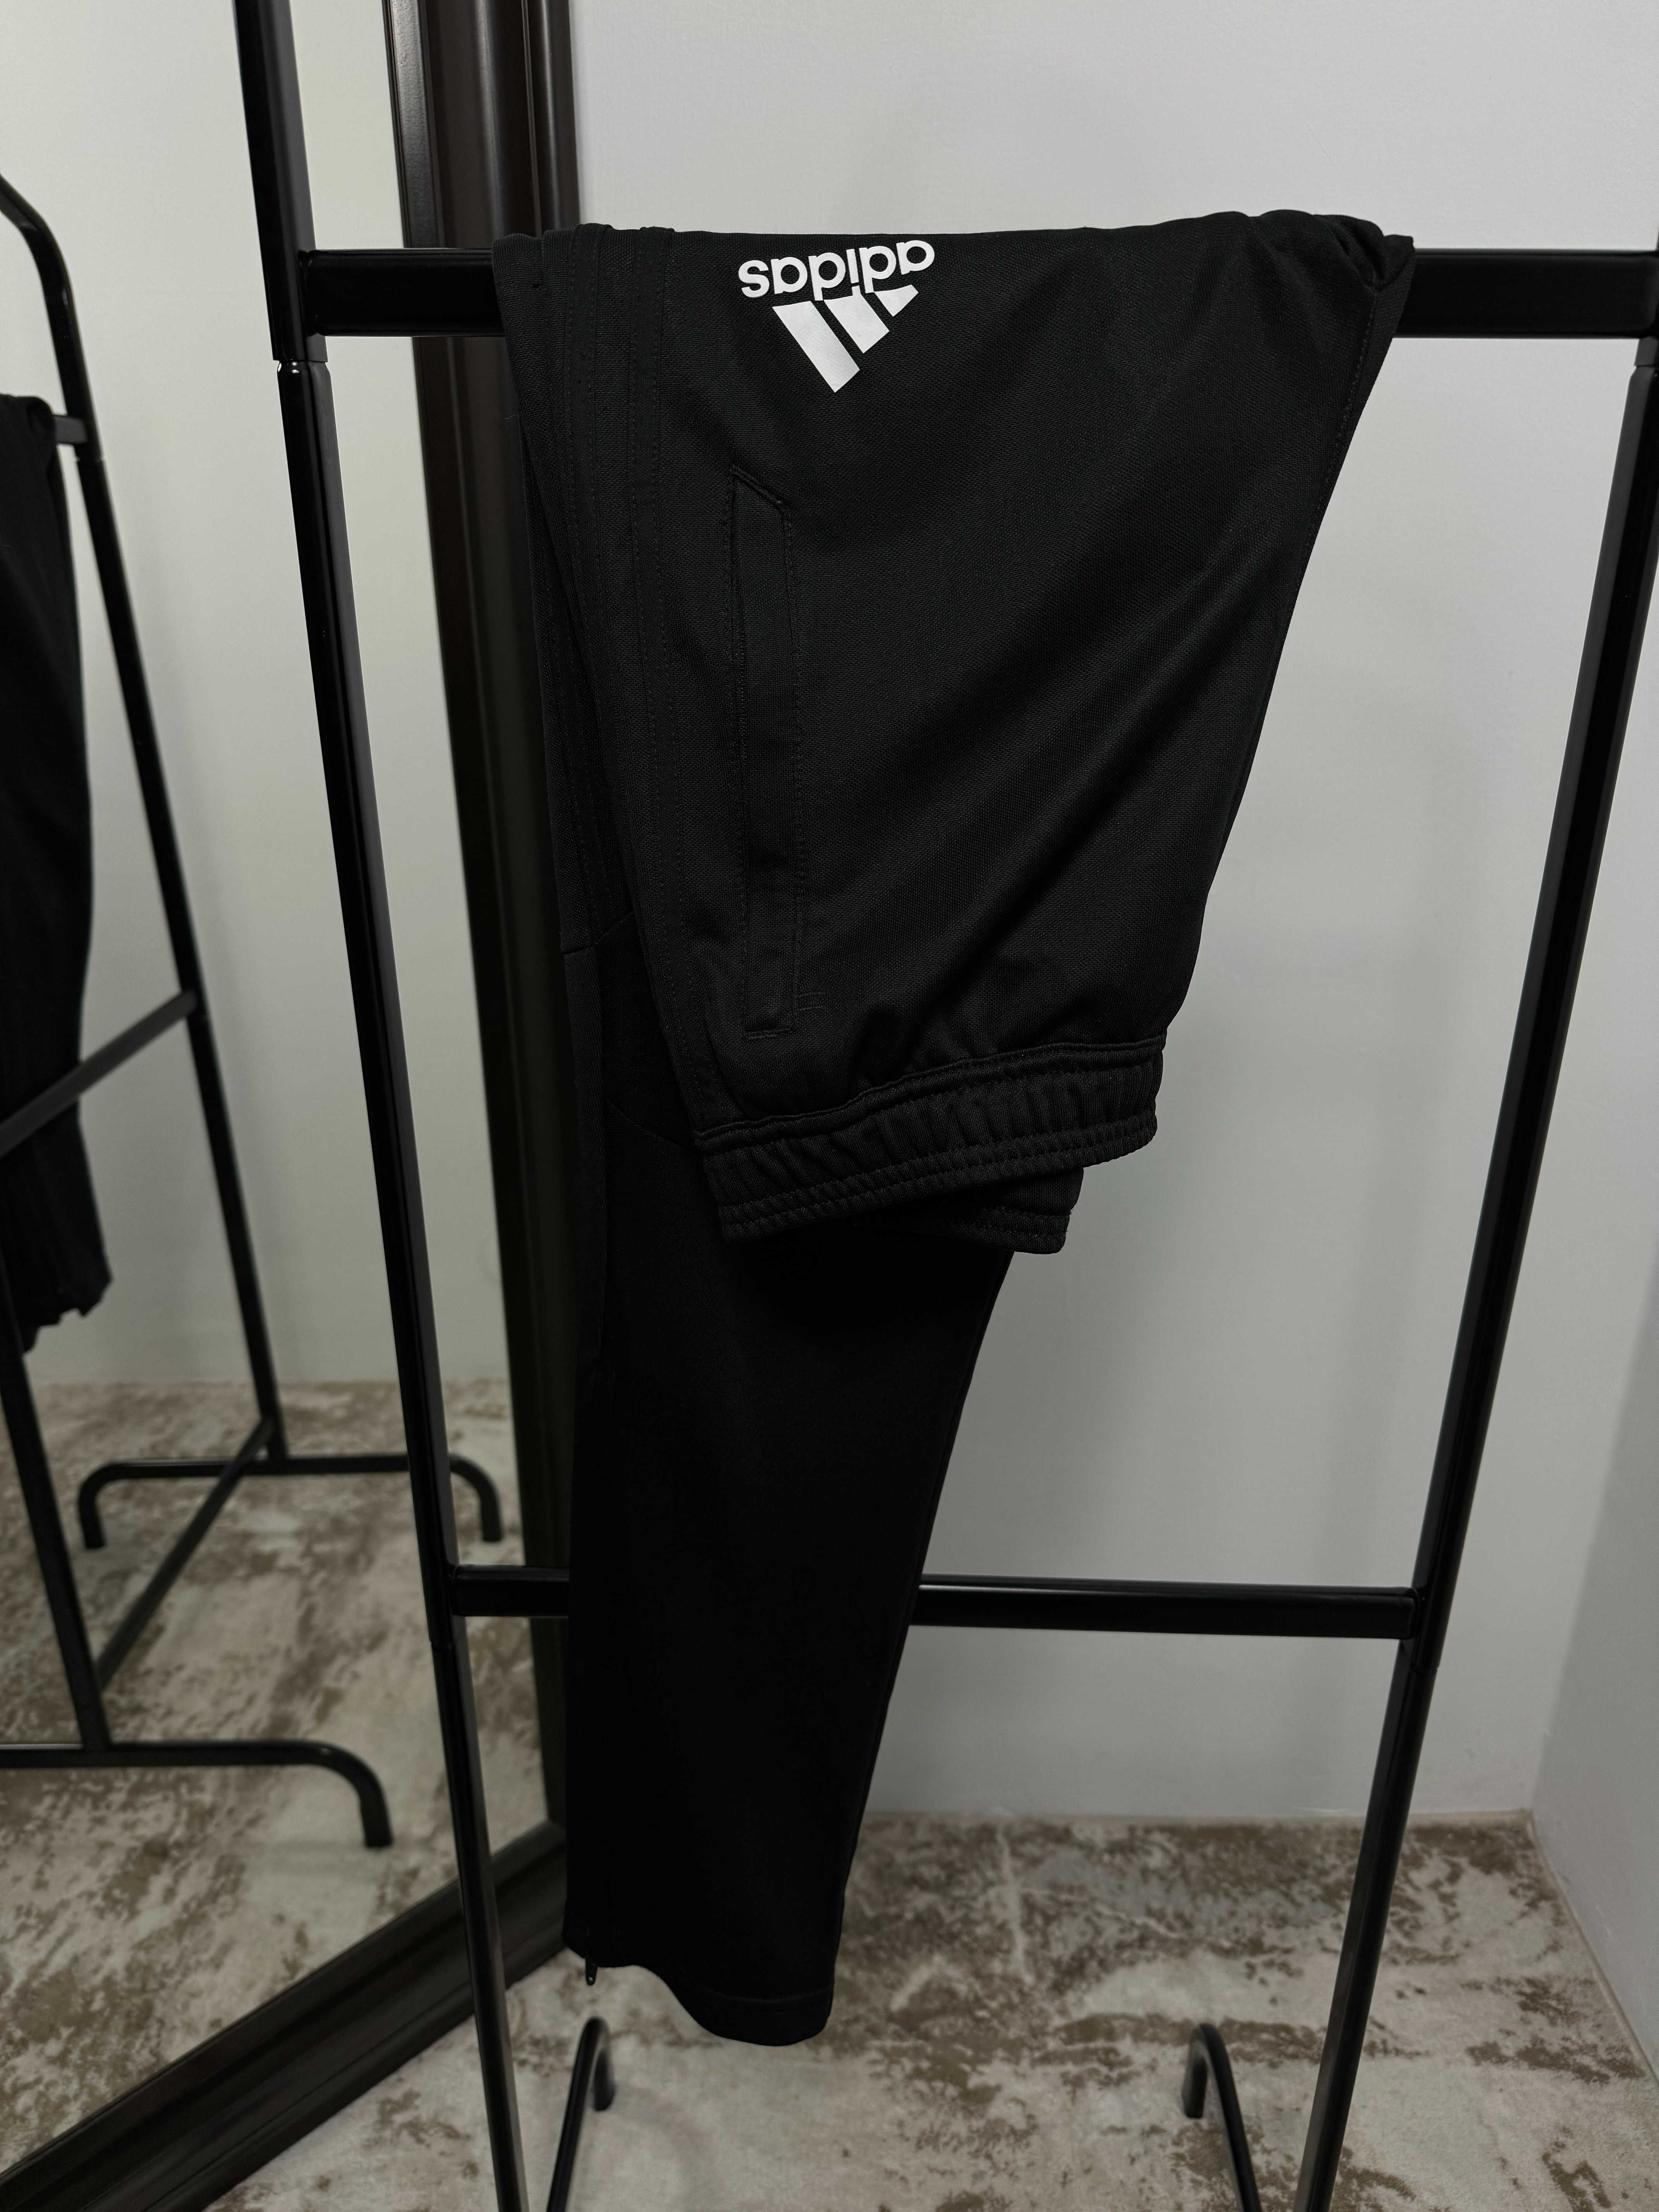 Dresy chłopięce Adidas Tiro 17 spodnie dresowe